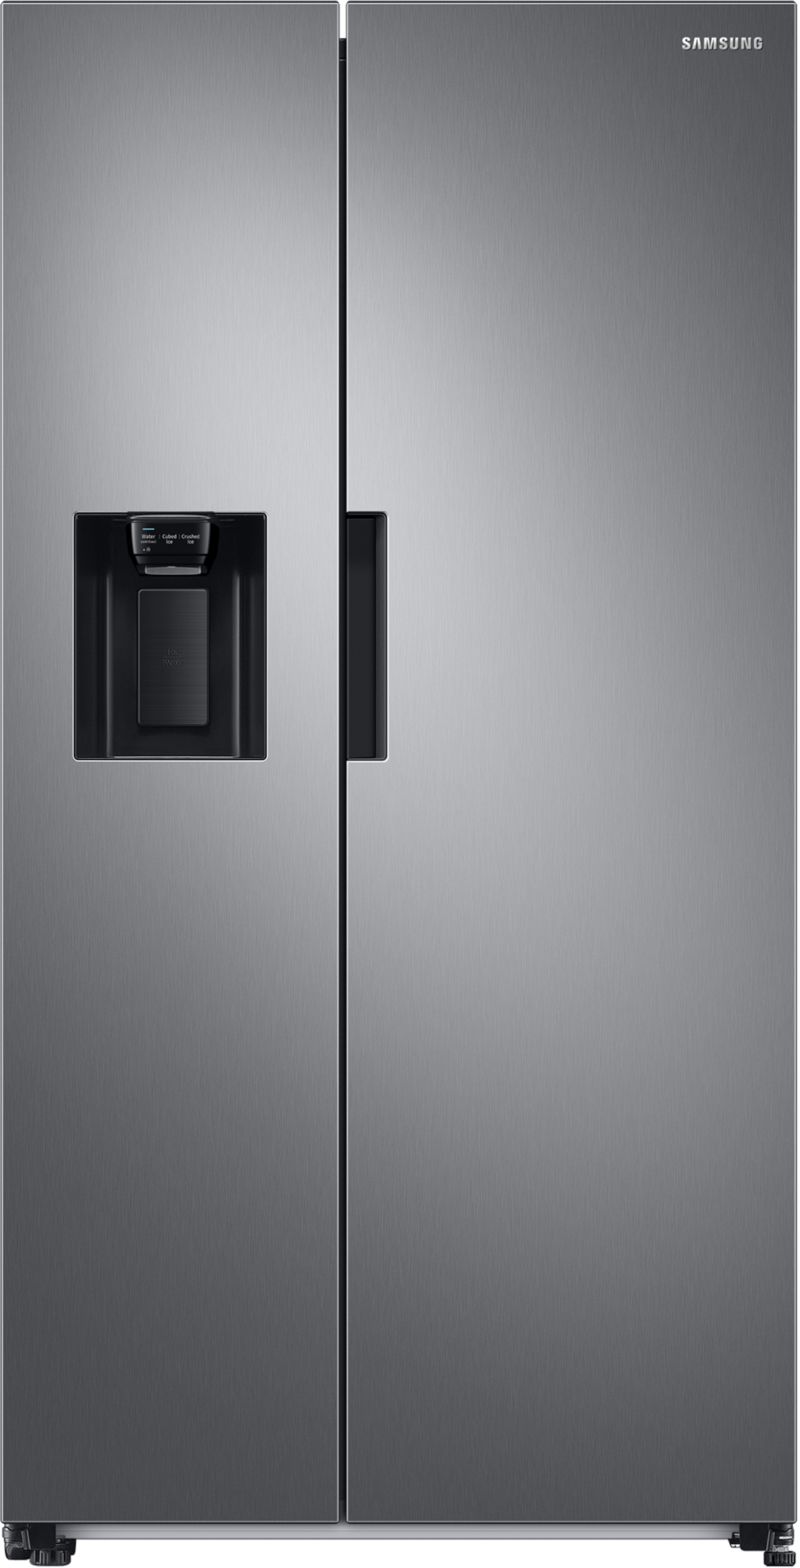 Tuyau d'alimentation d'eau, Samsung réfrigérateur & congélateur